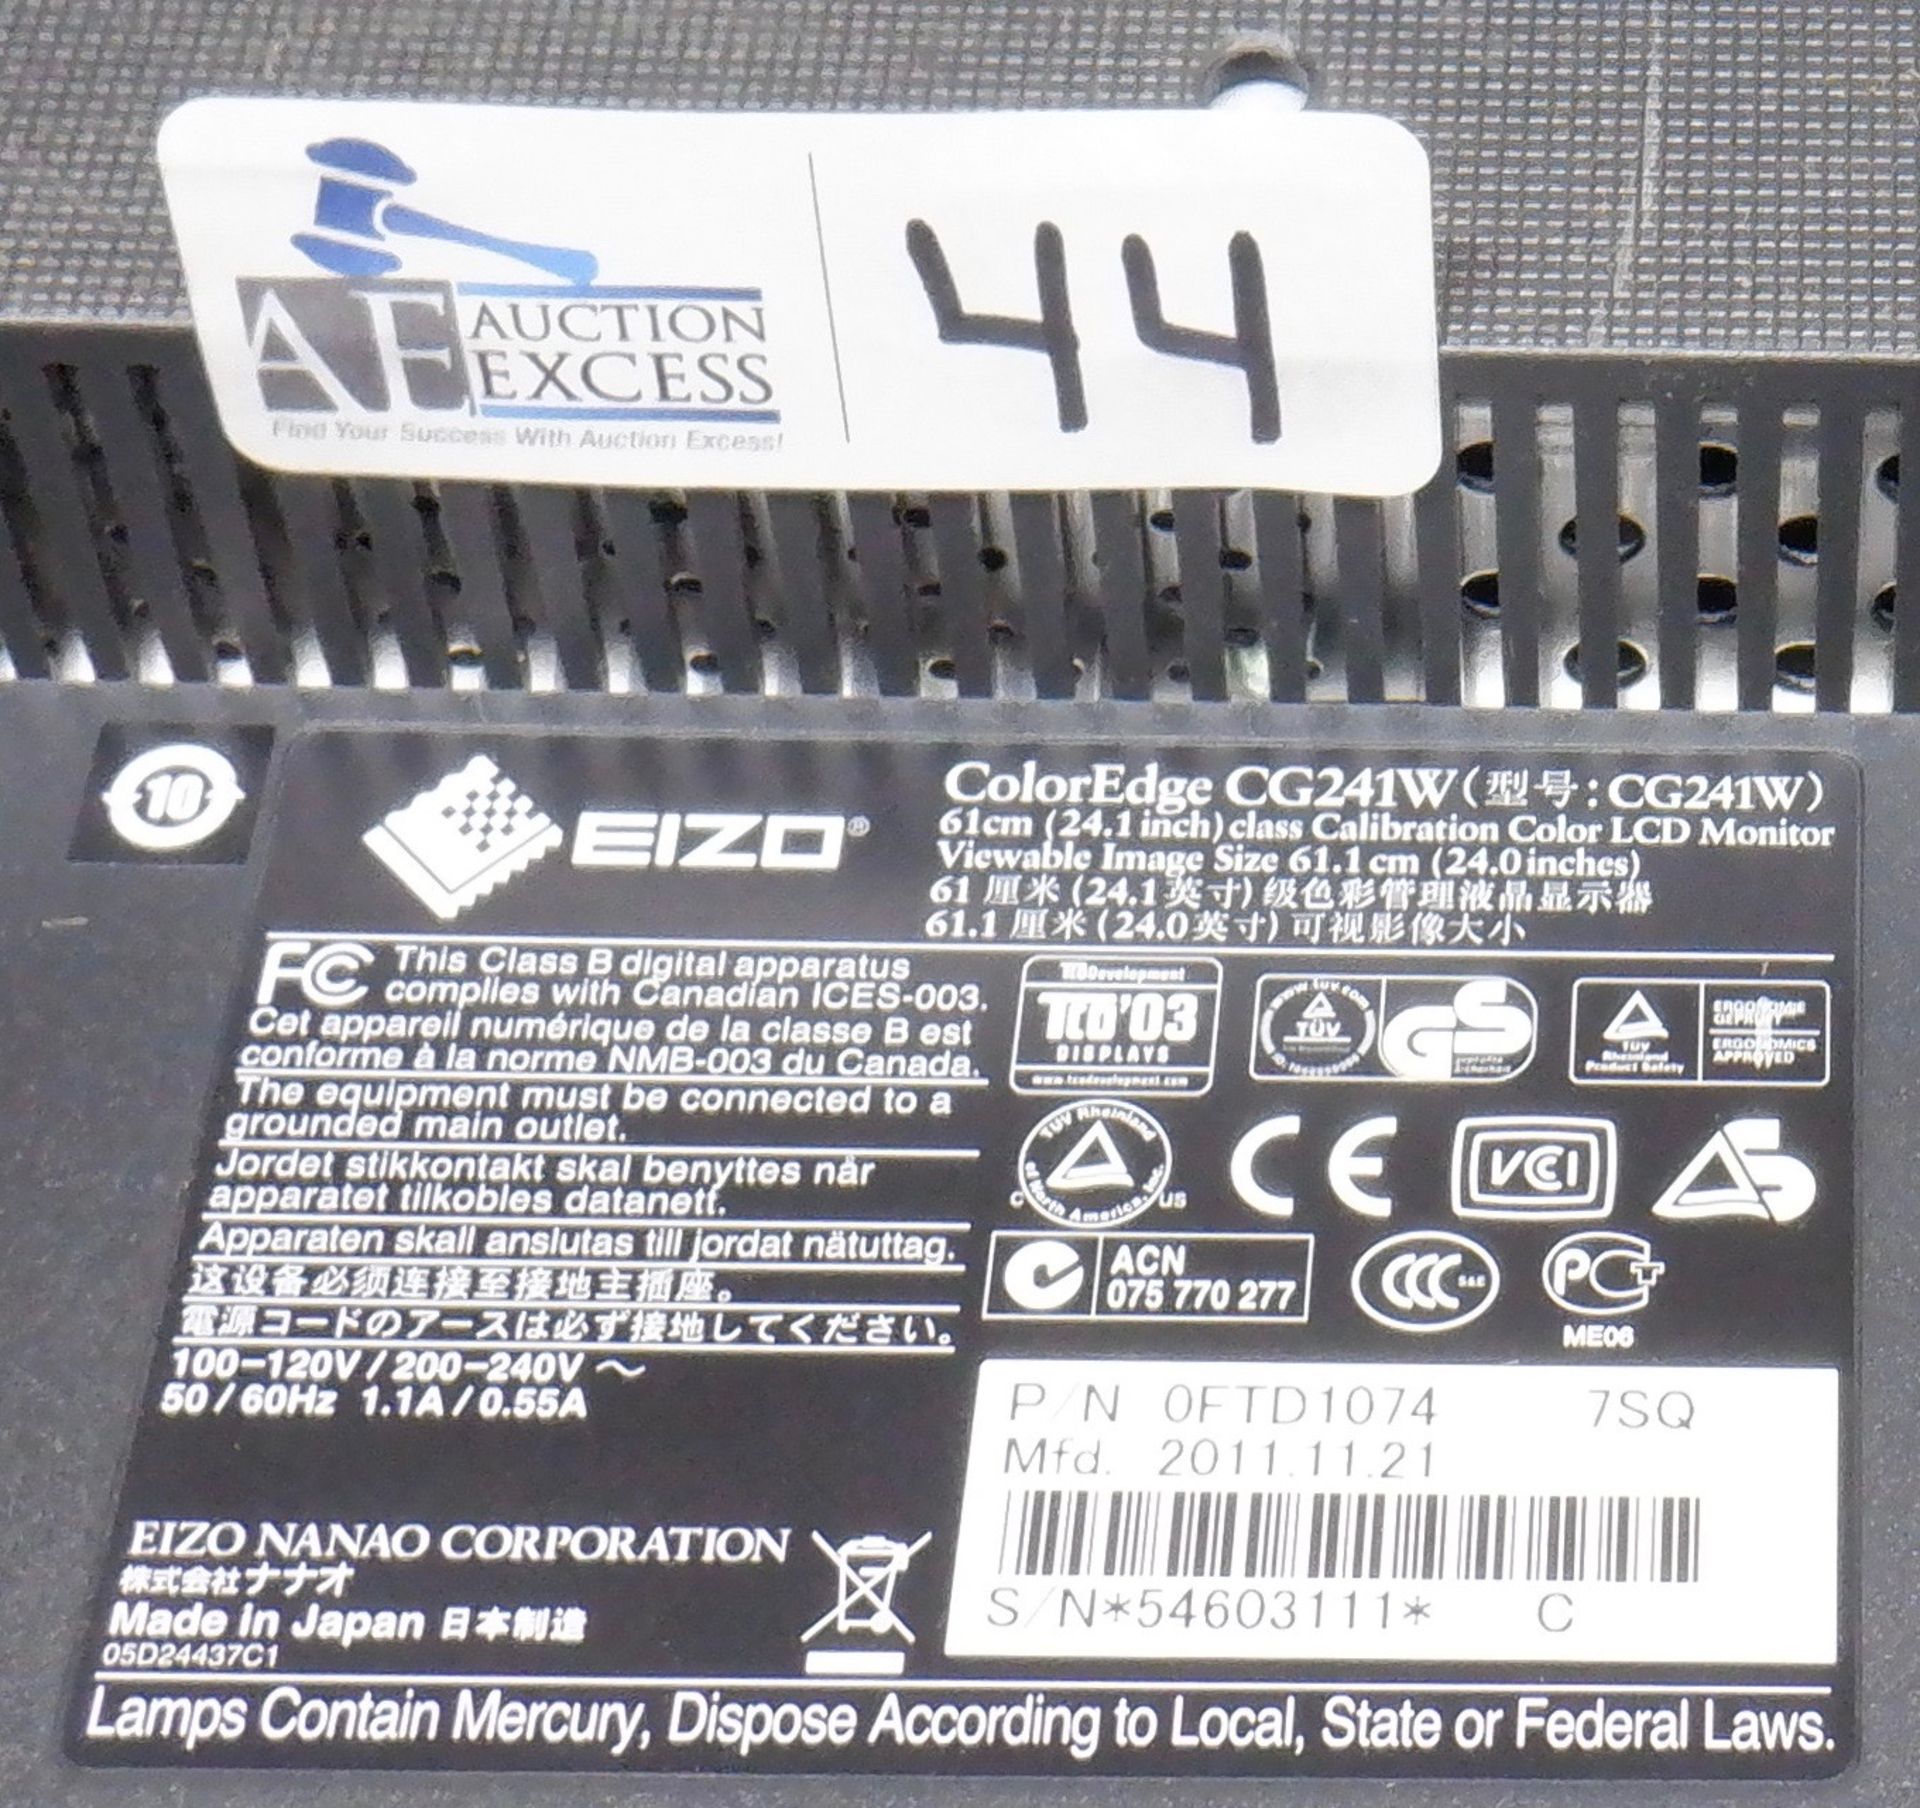 LOT OF 4 EIZO COLOREDGE CG245W LCD COLOR MONITORS - Image 2 of 2